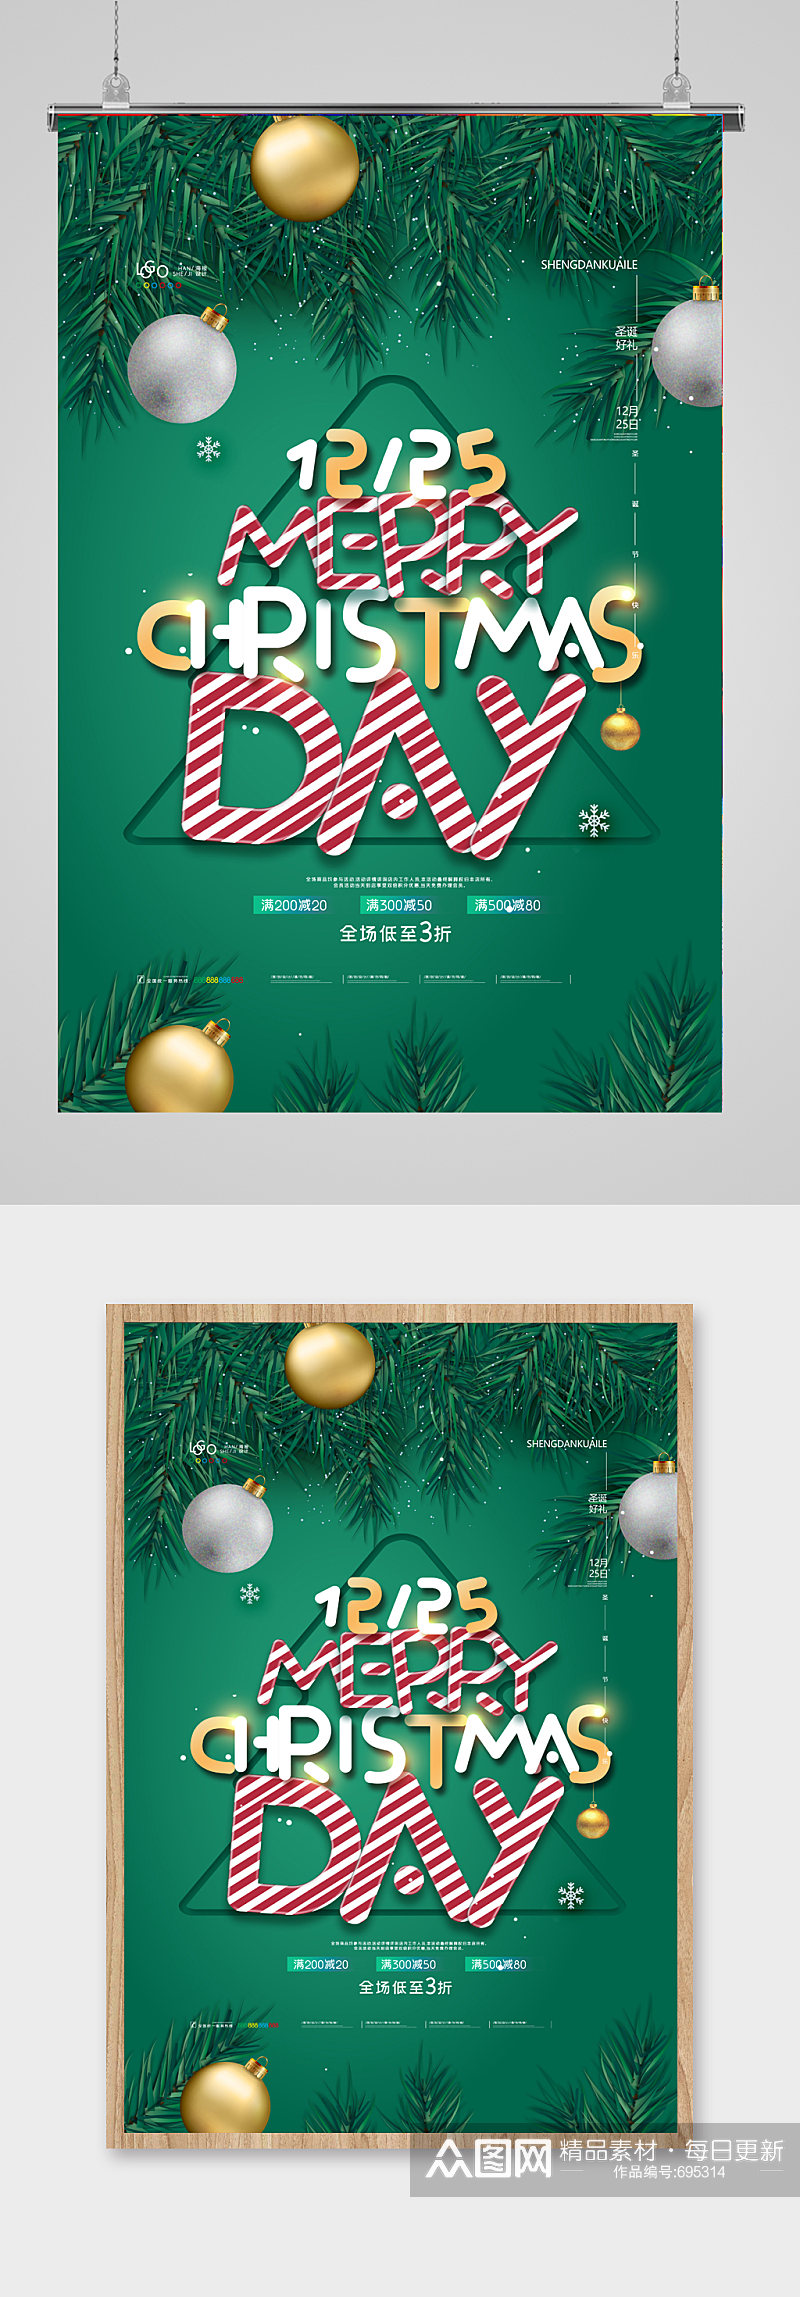 简约时尚圣诞节海报圣诞节商场促销海报素材